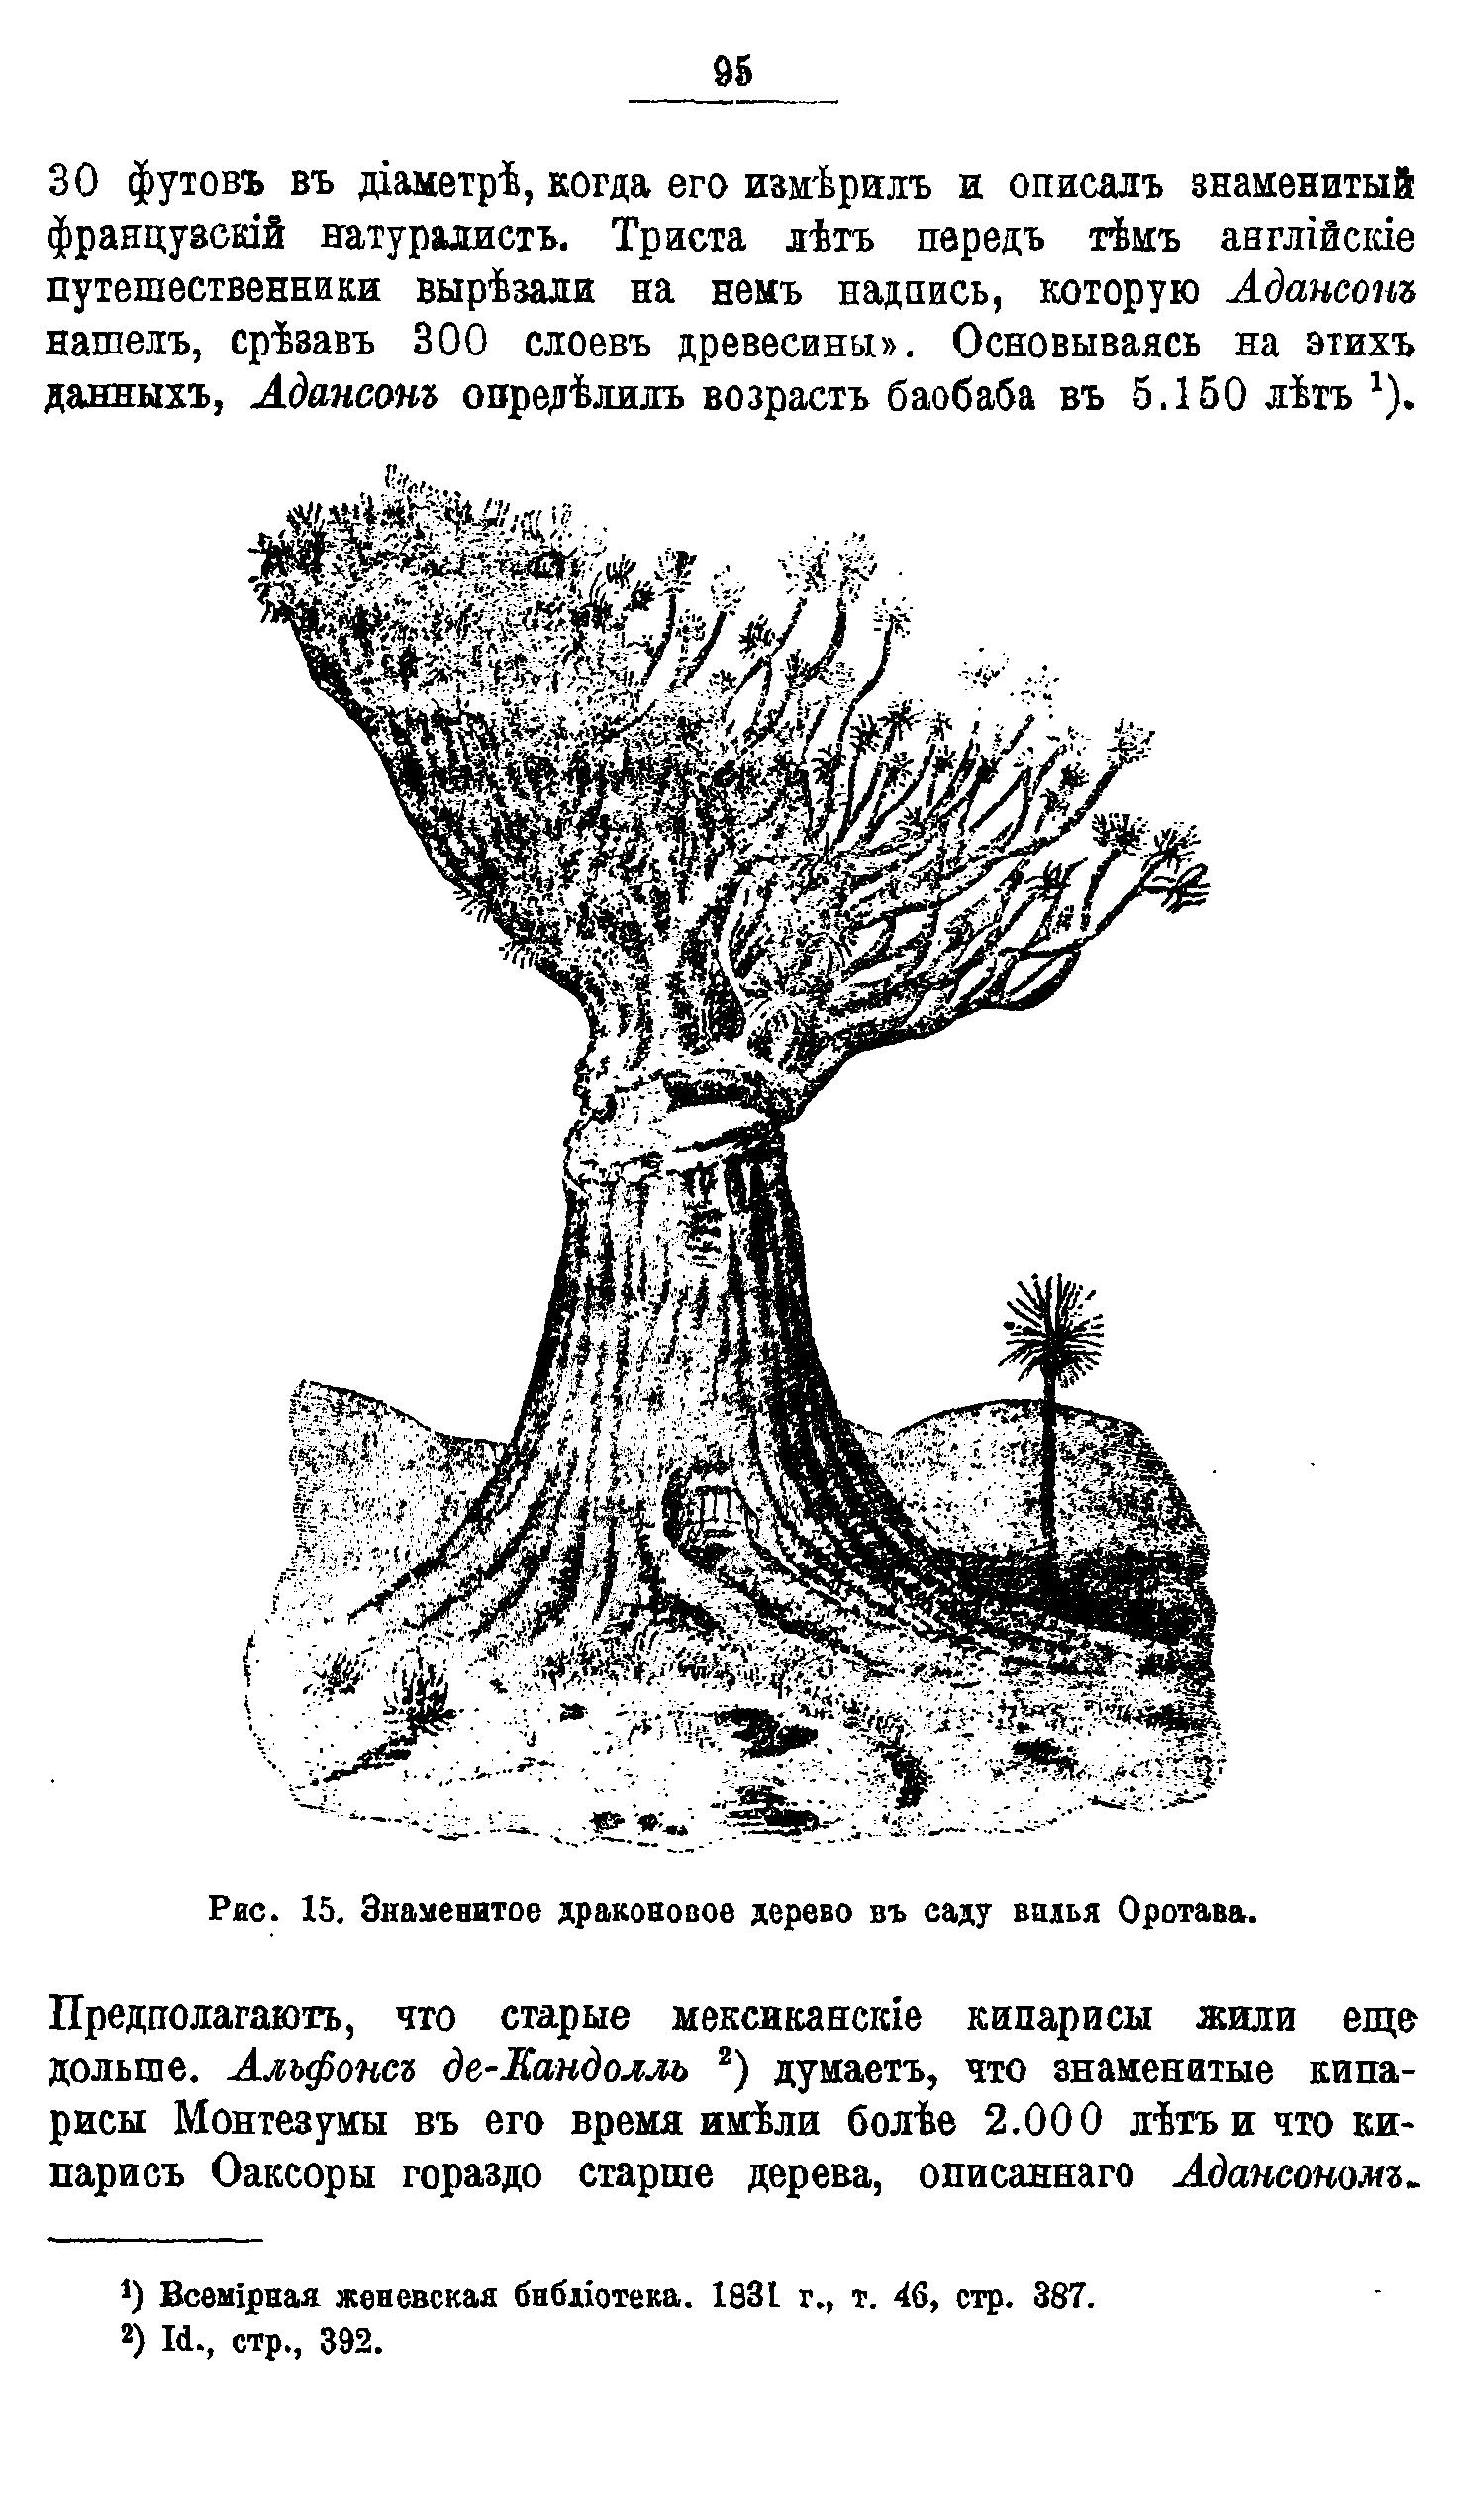 Рис. 15. Знаменитое драконовое дерево въ саду вилья Оротава.